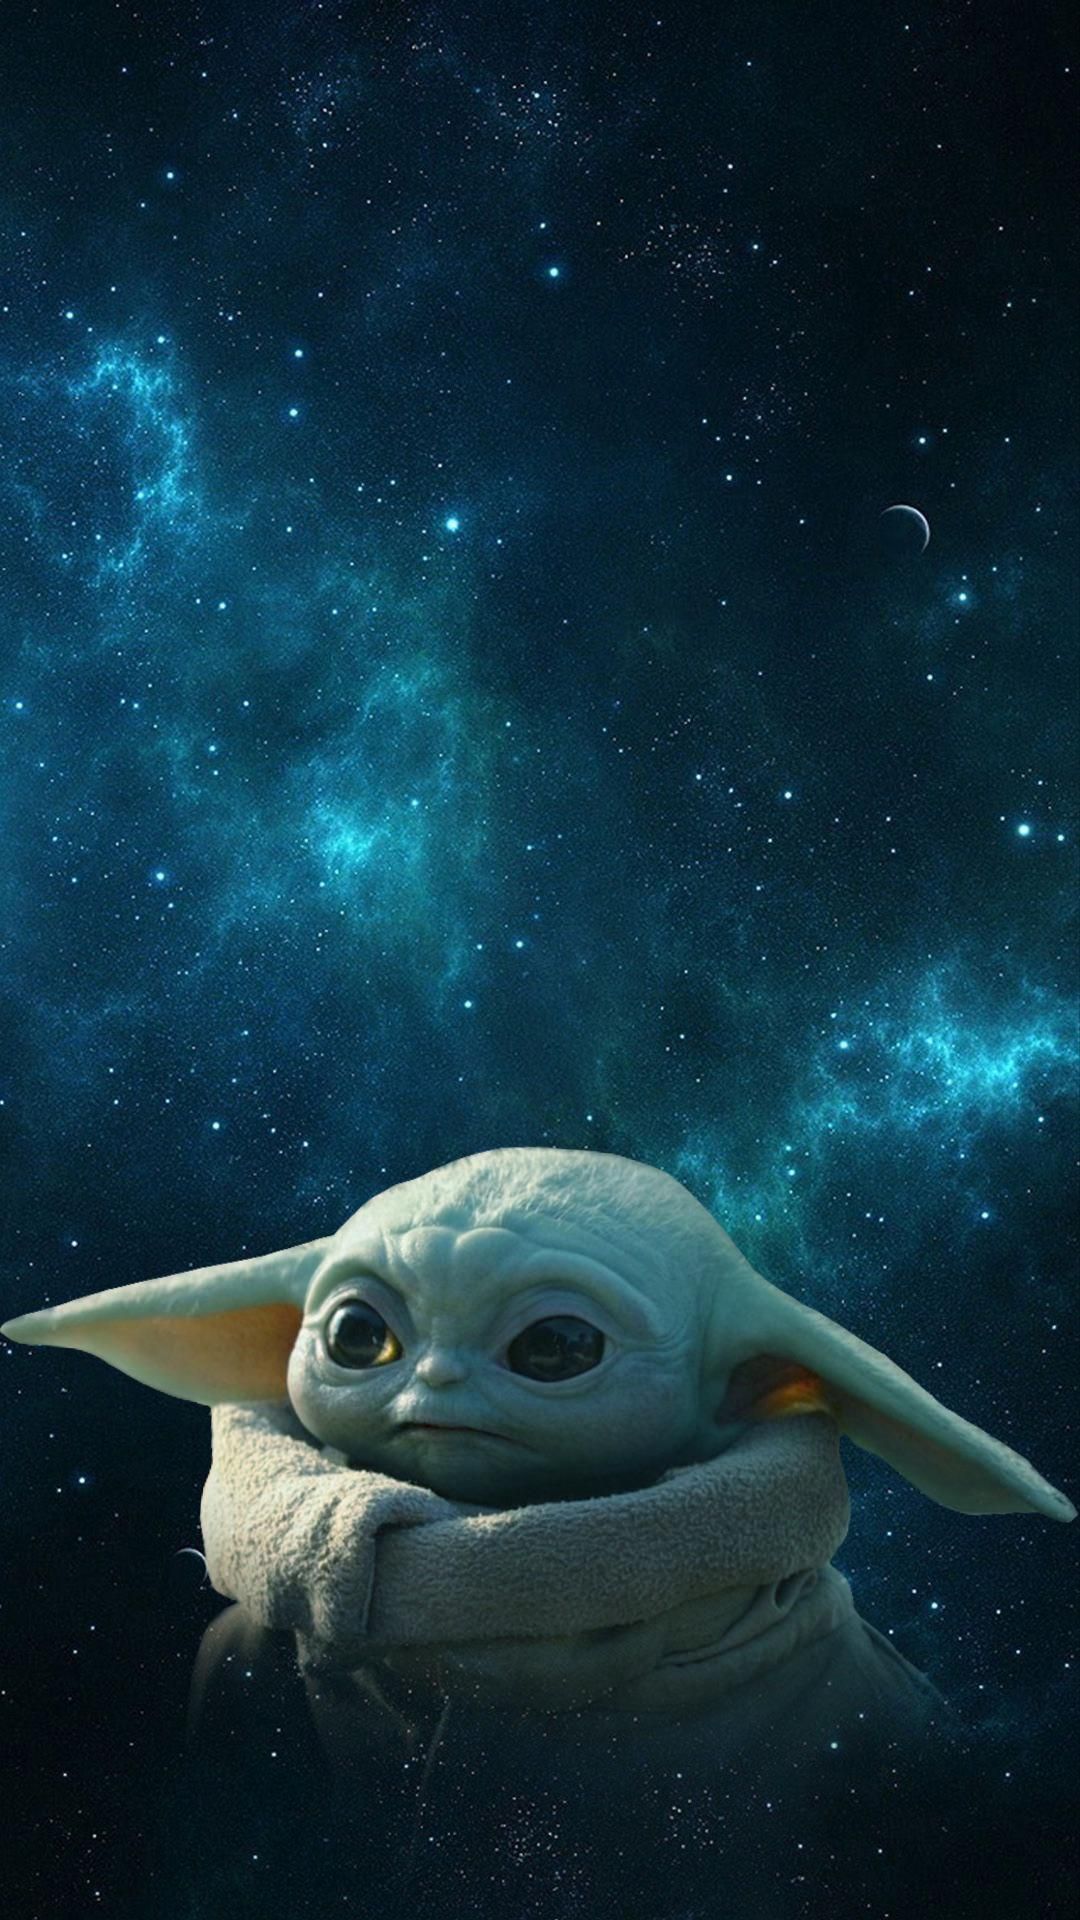 Sweet Baby Yoda Background I Made. R BabyYoda. Baby Yoda Grogu. Yoda Image, Yoda Wallpaper, Yoda Picture